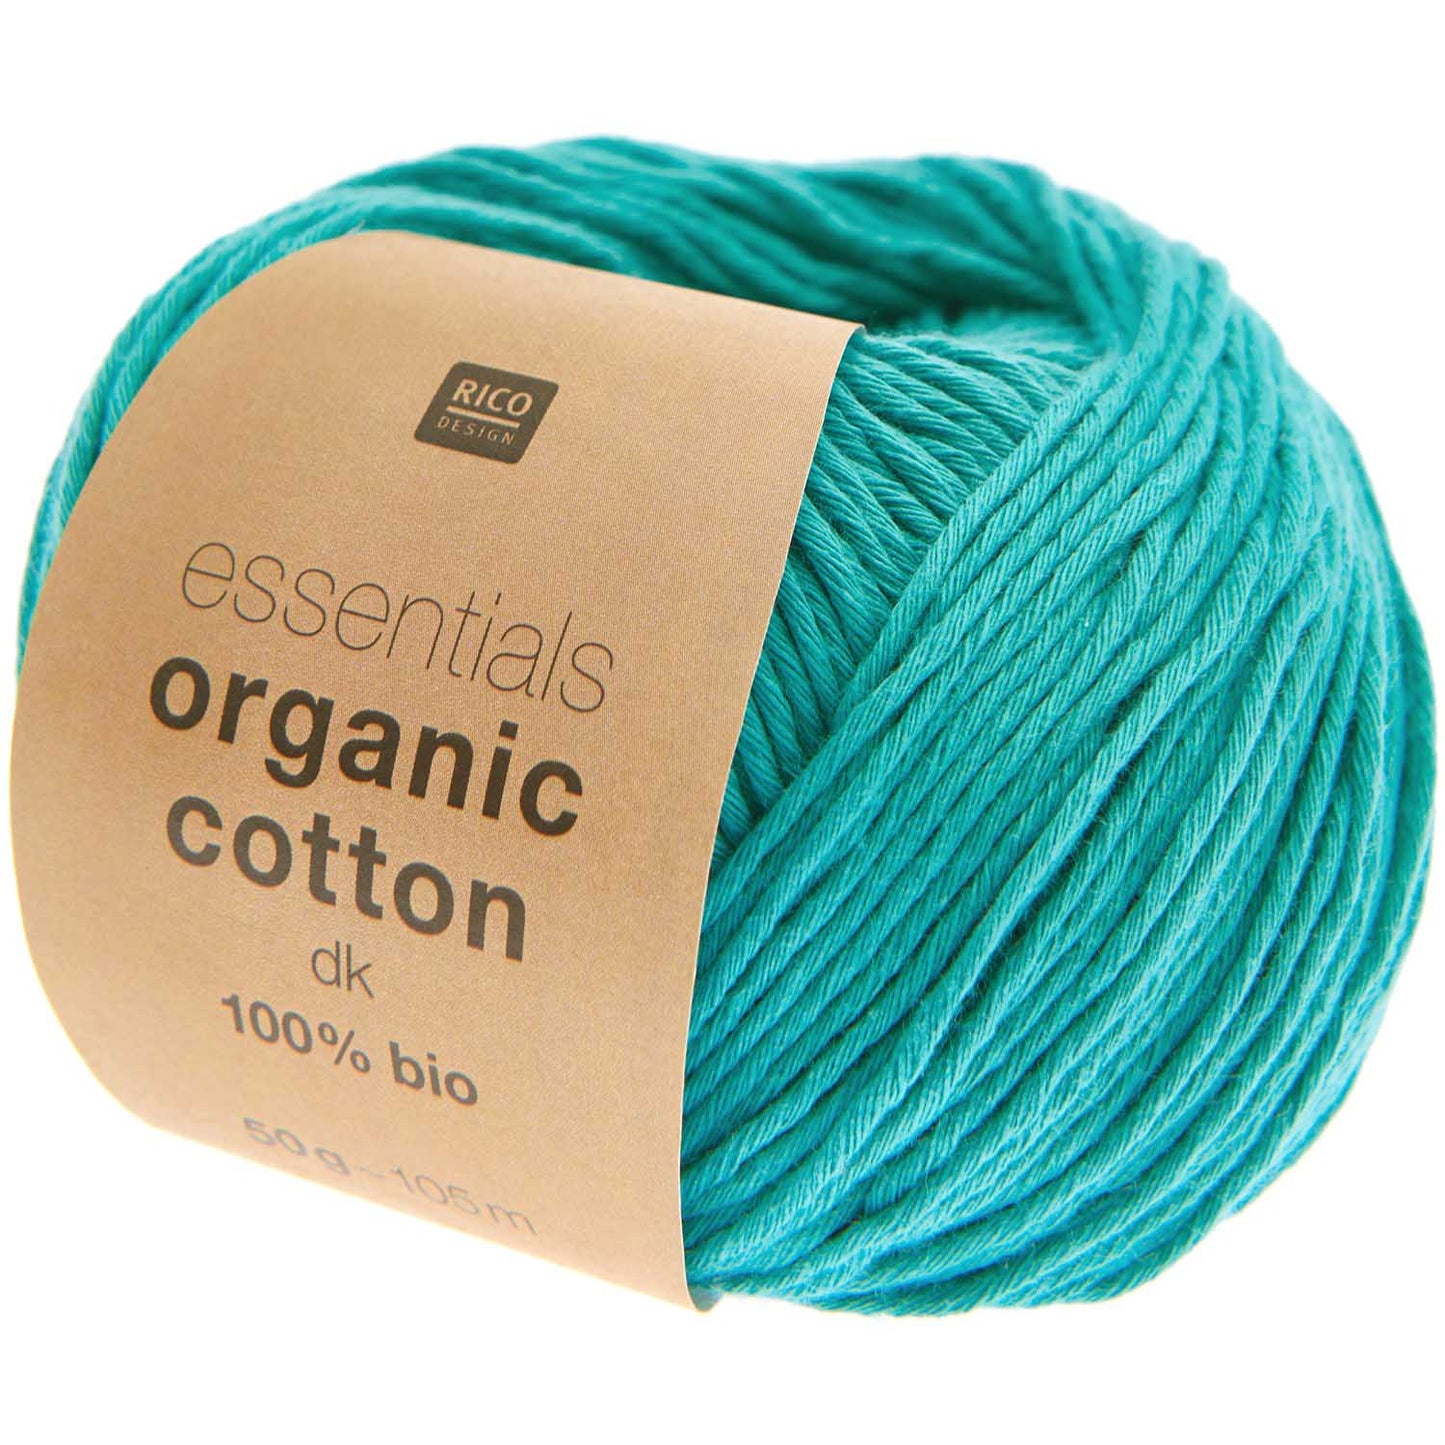 Essentials Organic Cotton dk 50g